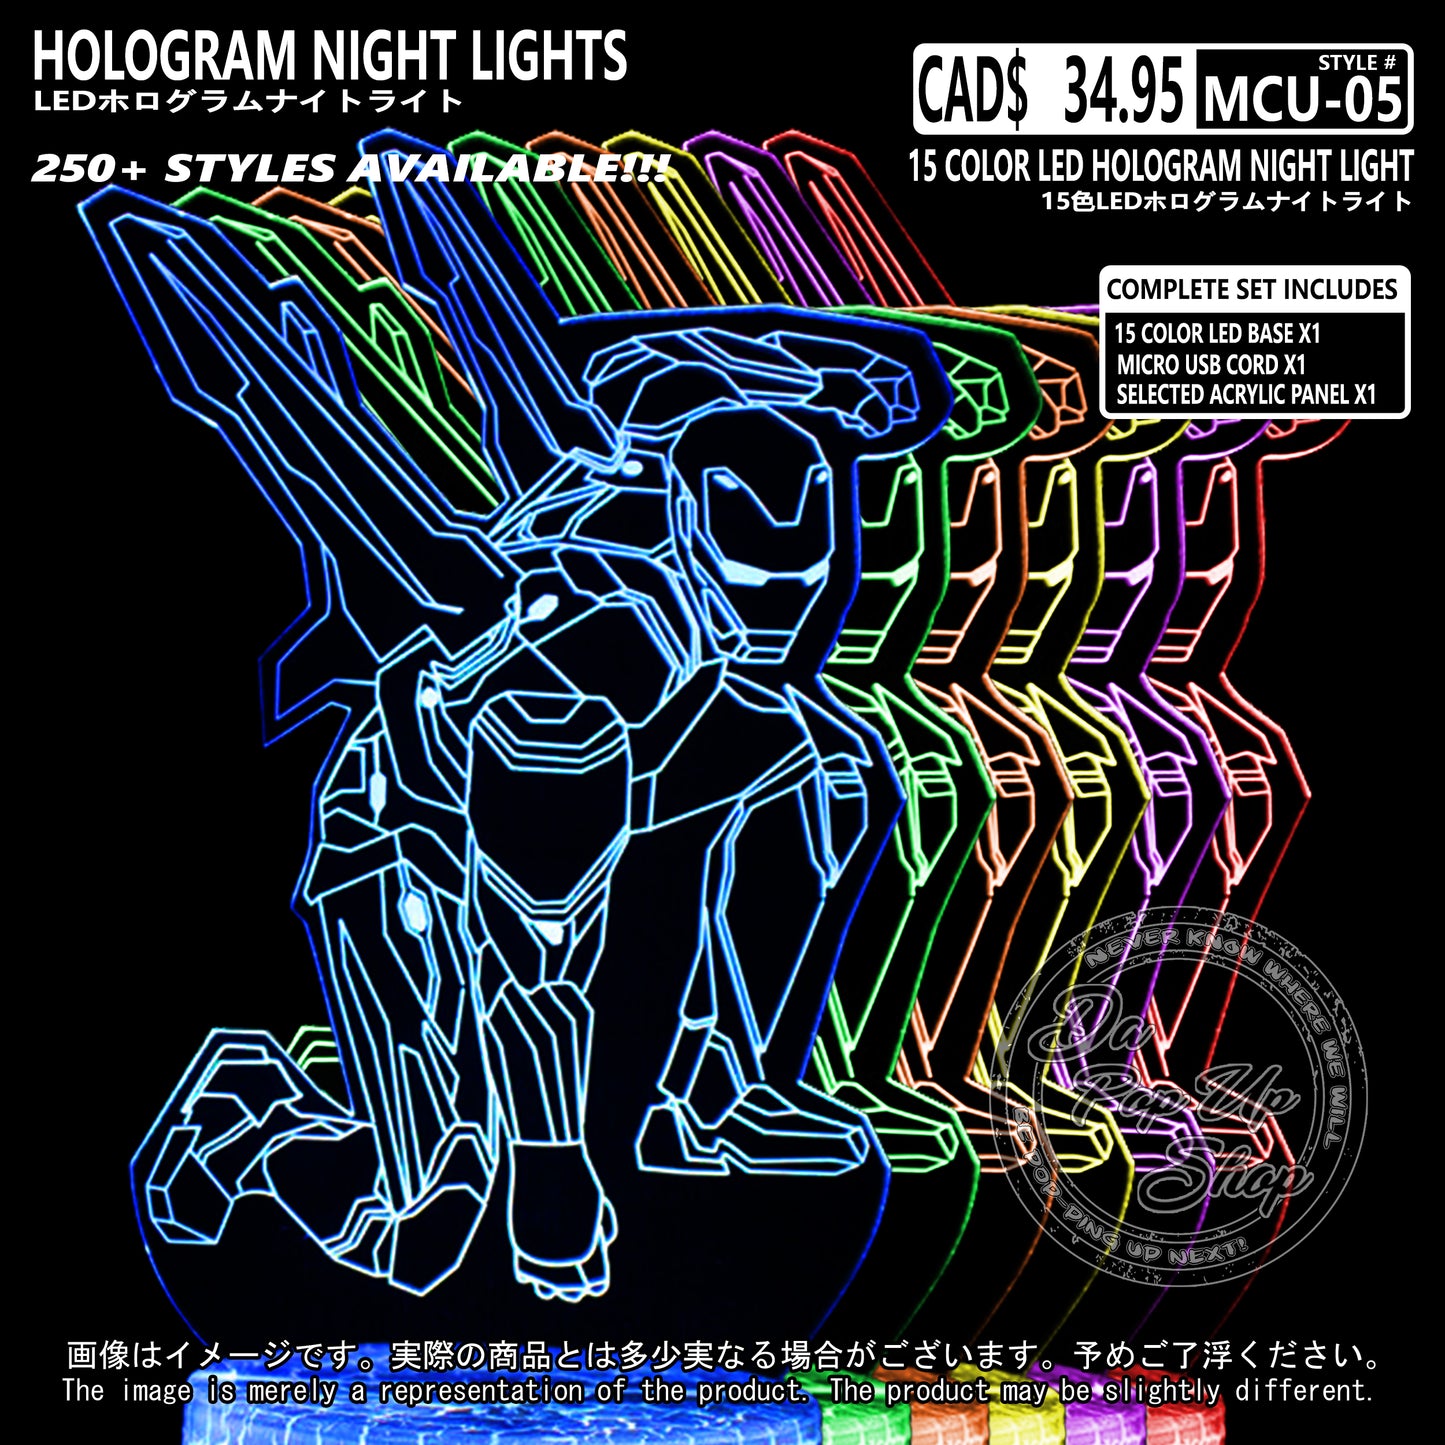 (MCU-05) MCU Marvel Cinematic Universal Hologram LED Night Light